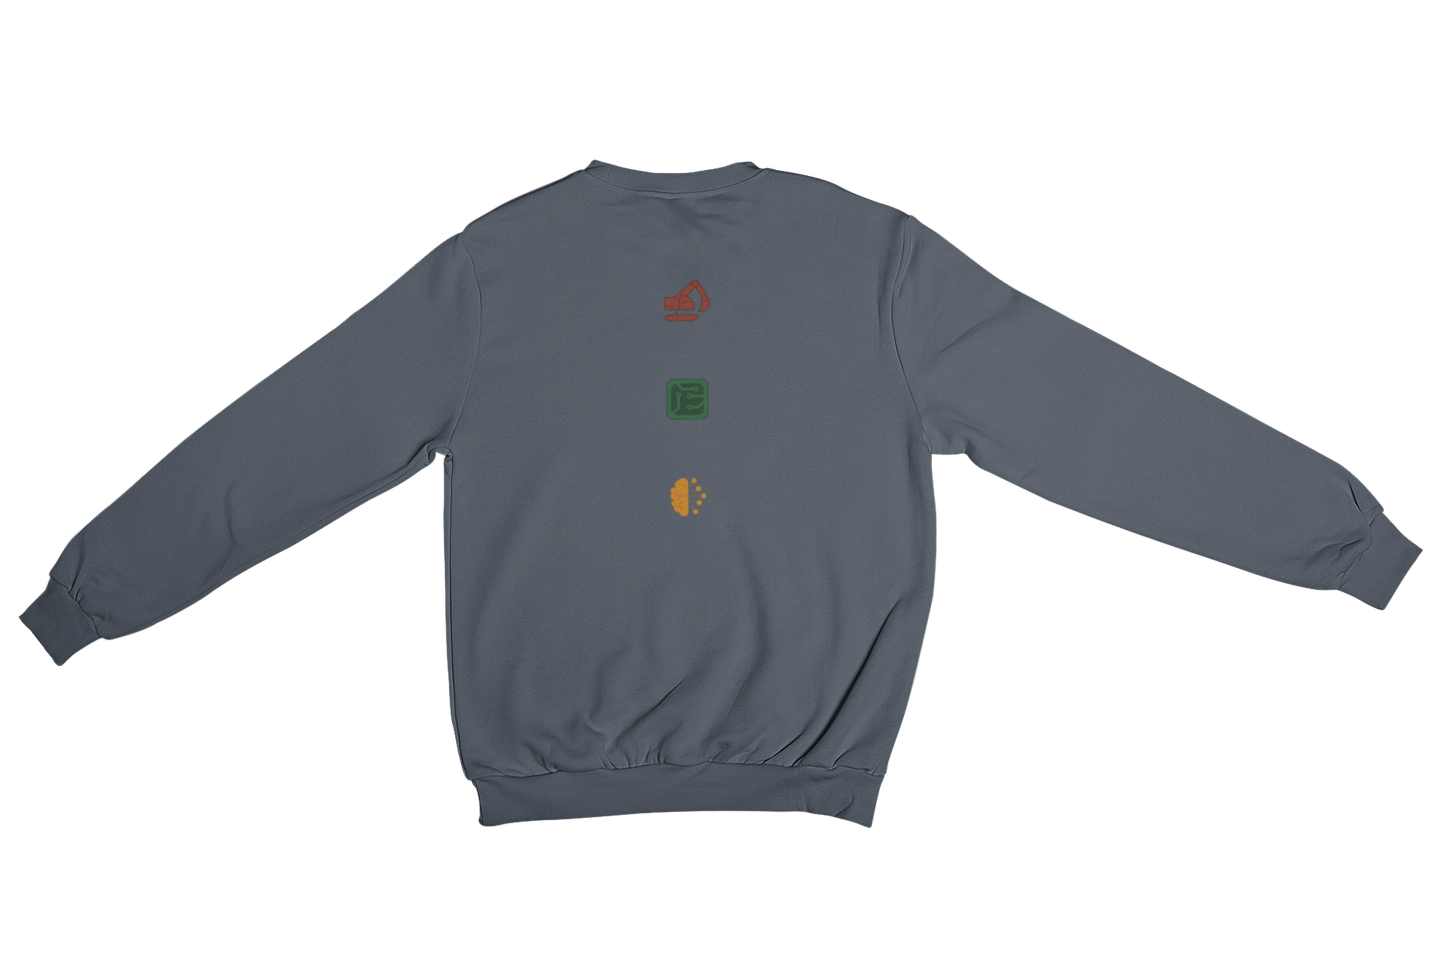 HTL Rankweil - Sweatshirt - Dunkel Front- und Backprint